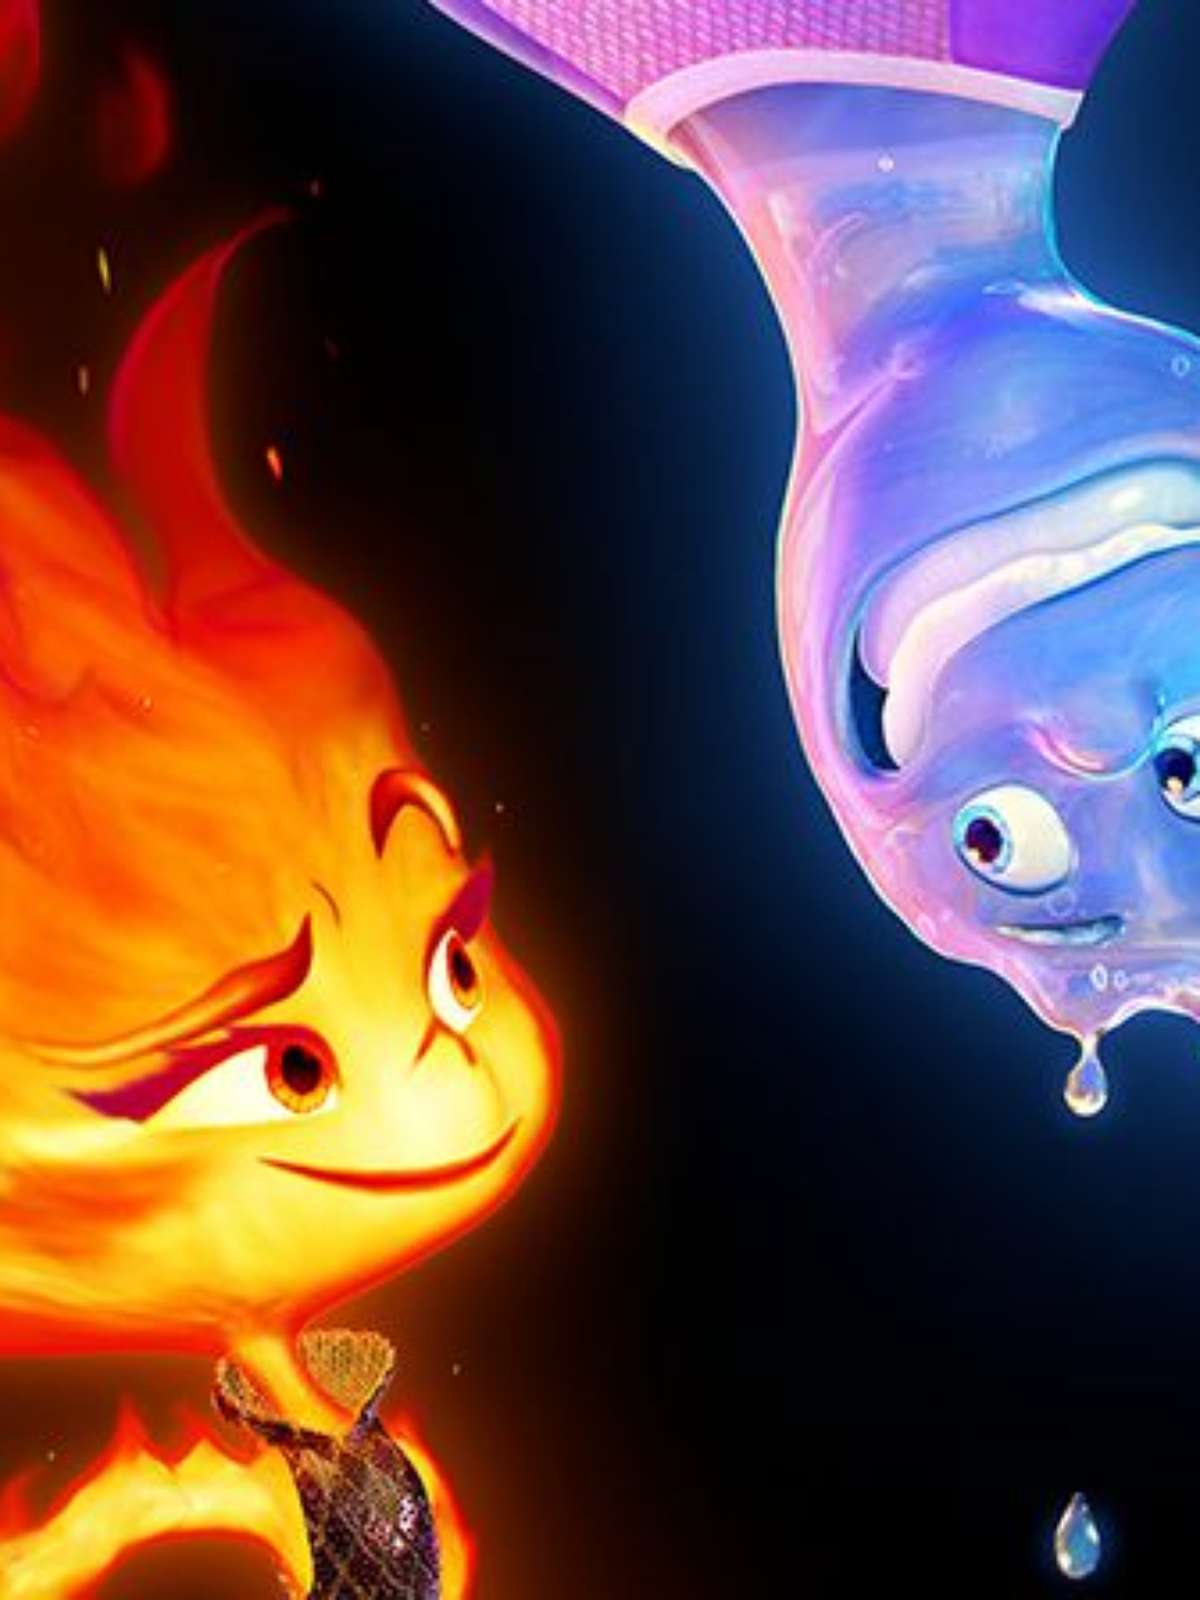 Fogo e água se aliam no filme 'Elementos', sutil alegoria sobre a